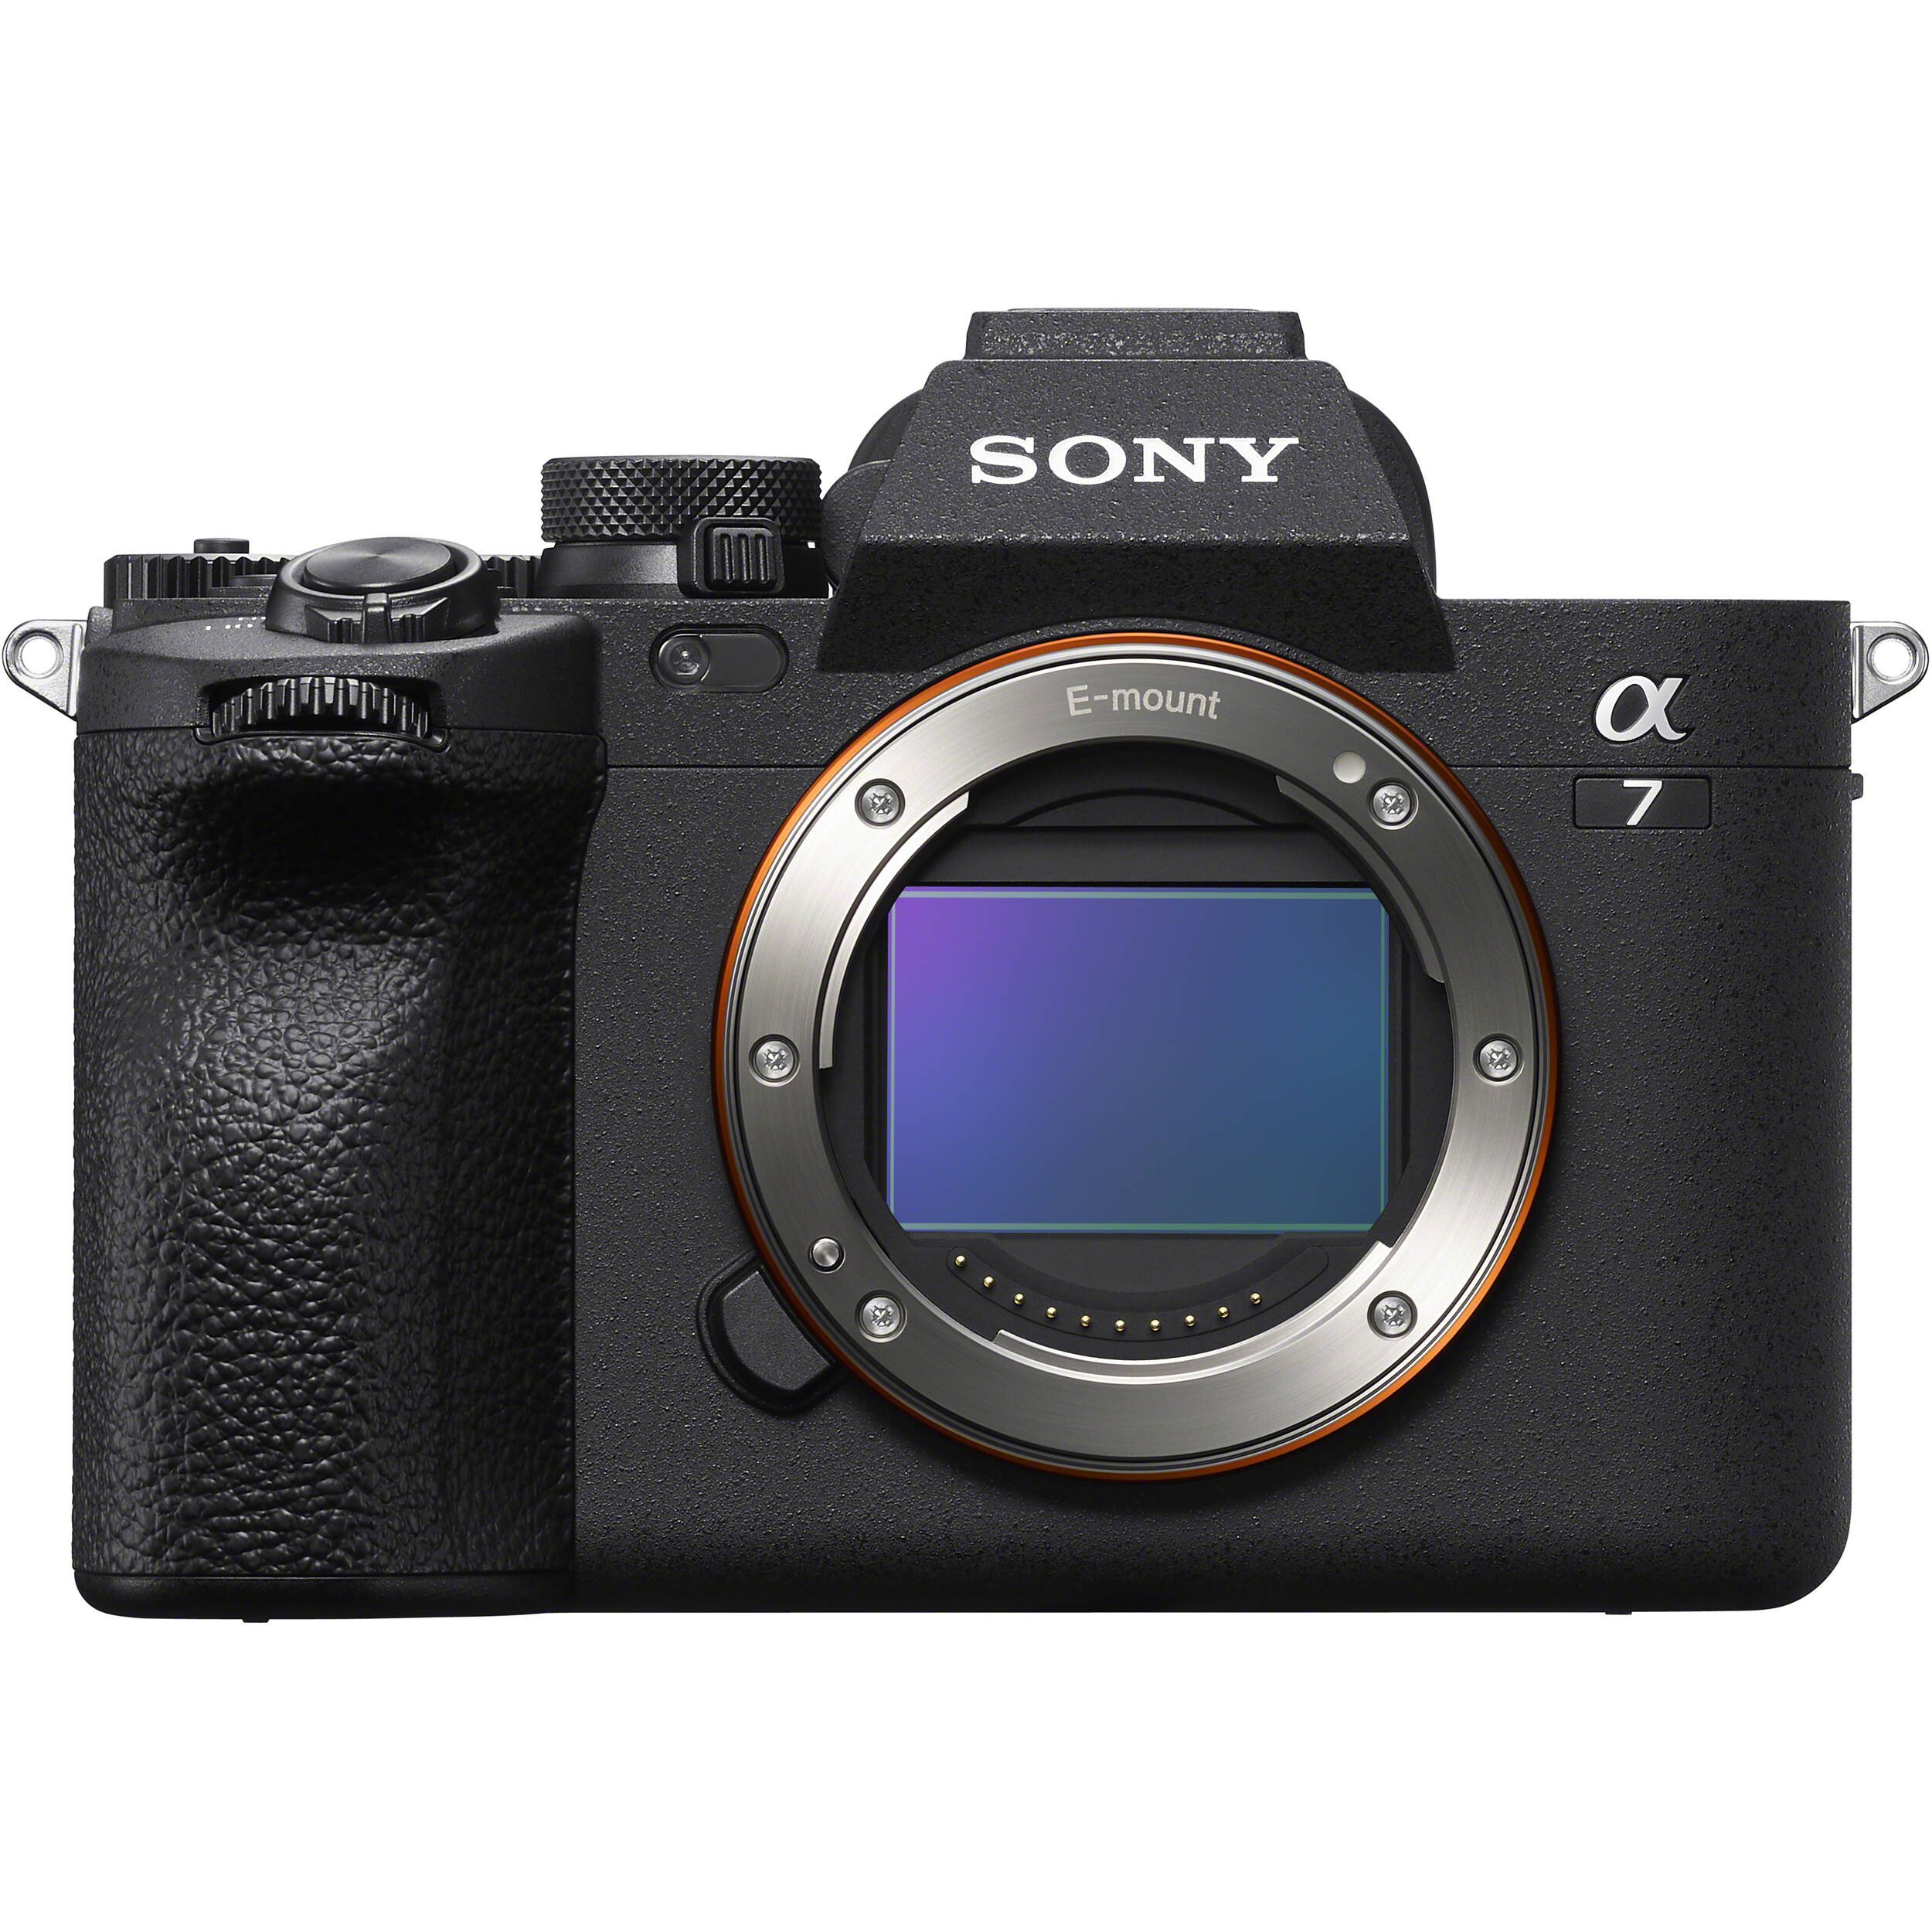 Sony Alpha A7 Mark IV là một máy ảnh chuyên nghiệp với chất lượng cao, khả năng chụp ảnh độ nét cao và tính năng quay phim hấp dẫn. Hãy tham khảo những hình ảnh được chụp bằng máy này để có thêm động lực và chuẩn bị cho những khoảnh khắc đặc biệt trong cuộc sống của bạn.